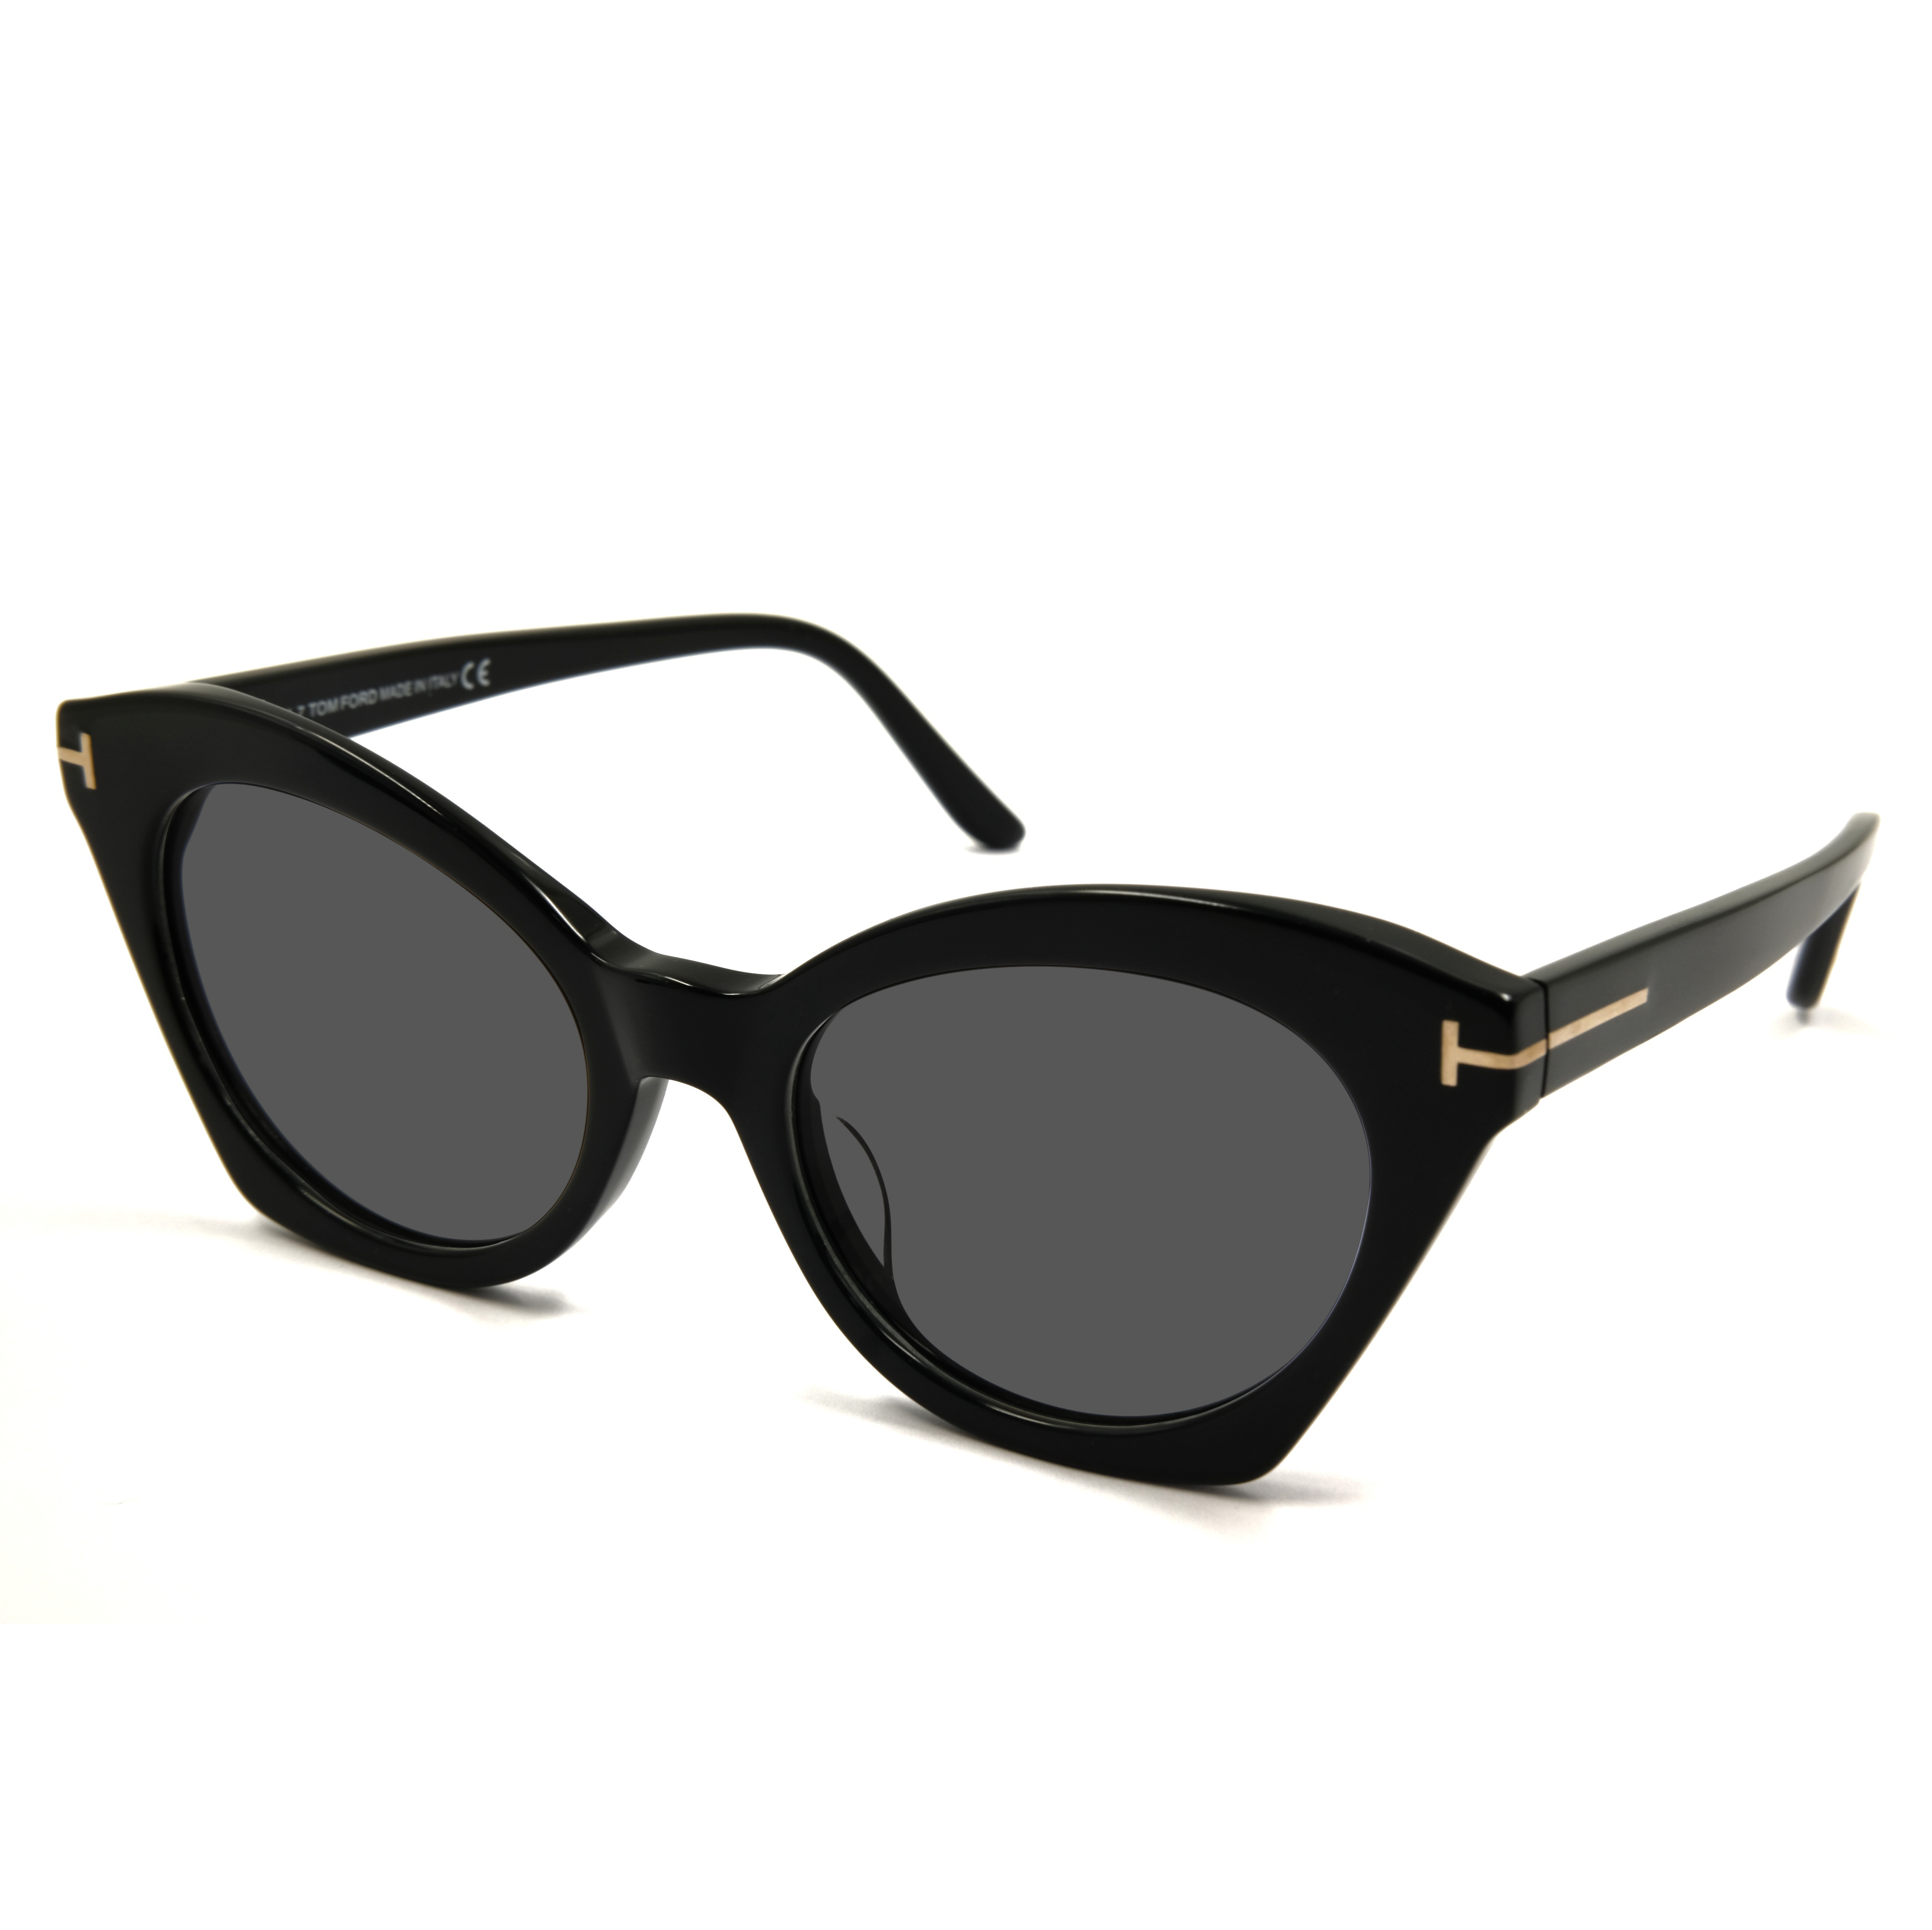 Fábrica de gafas de sol Gafas de sol de acetato negro Fabricantes de gafas de sol de ojo de gato